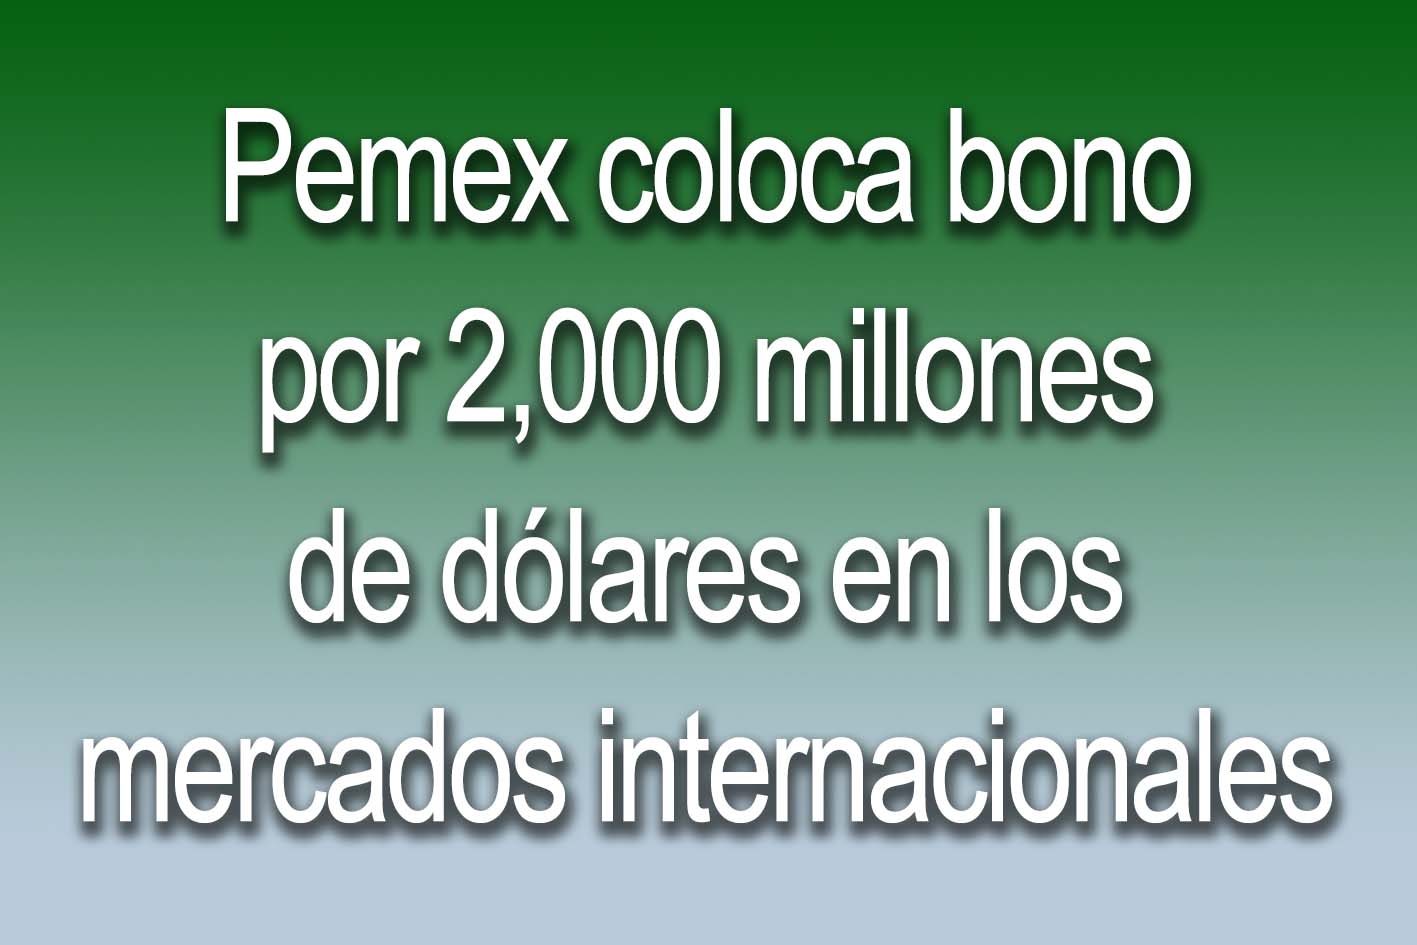 Photo of Pemex coloca bono por 2,000 millones de dólares en los mercados internacionales